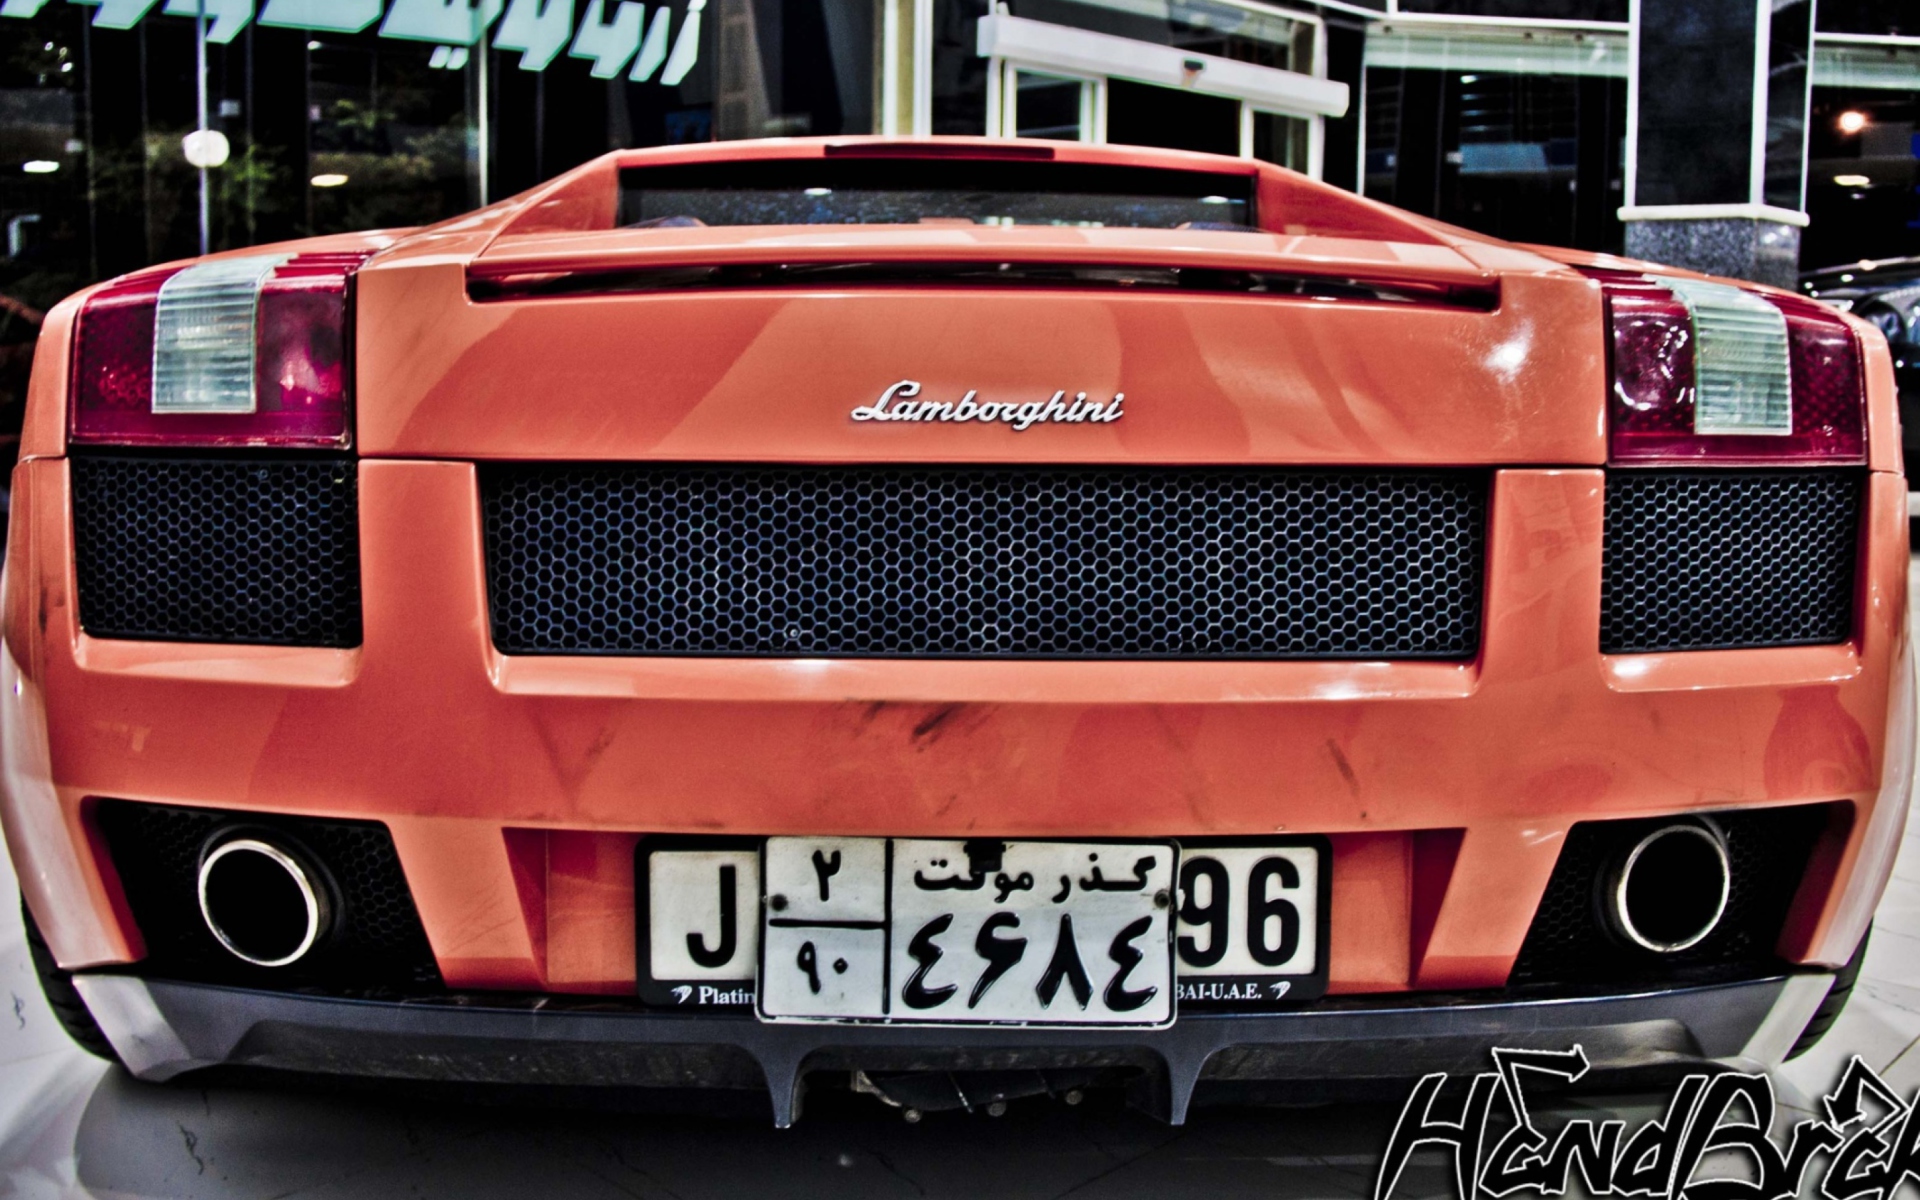 Fondo de pantalla Lamborghini 1920x1200